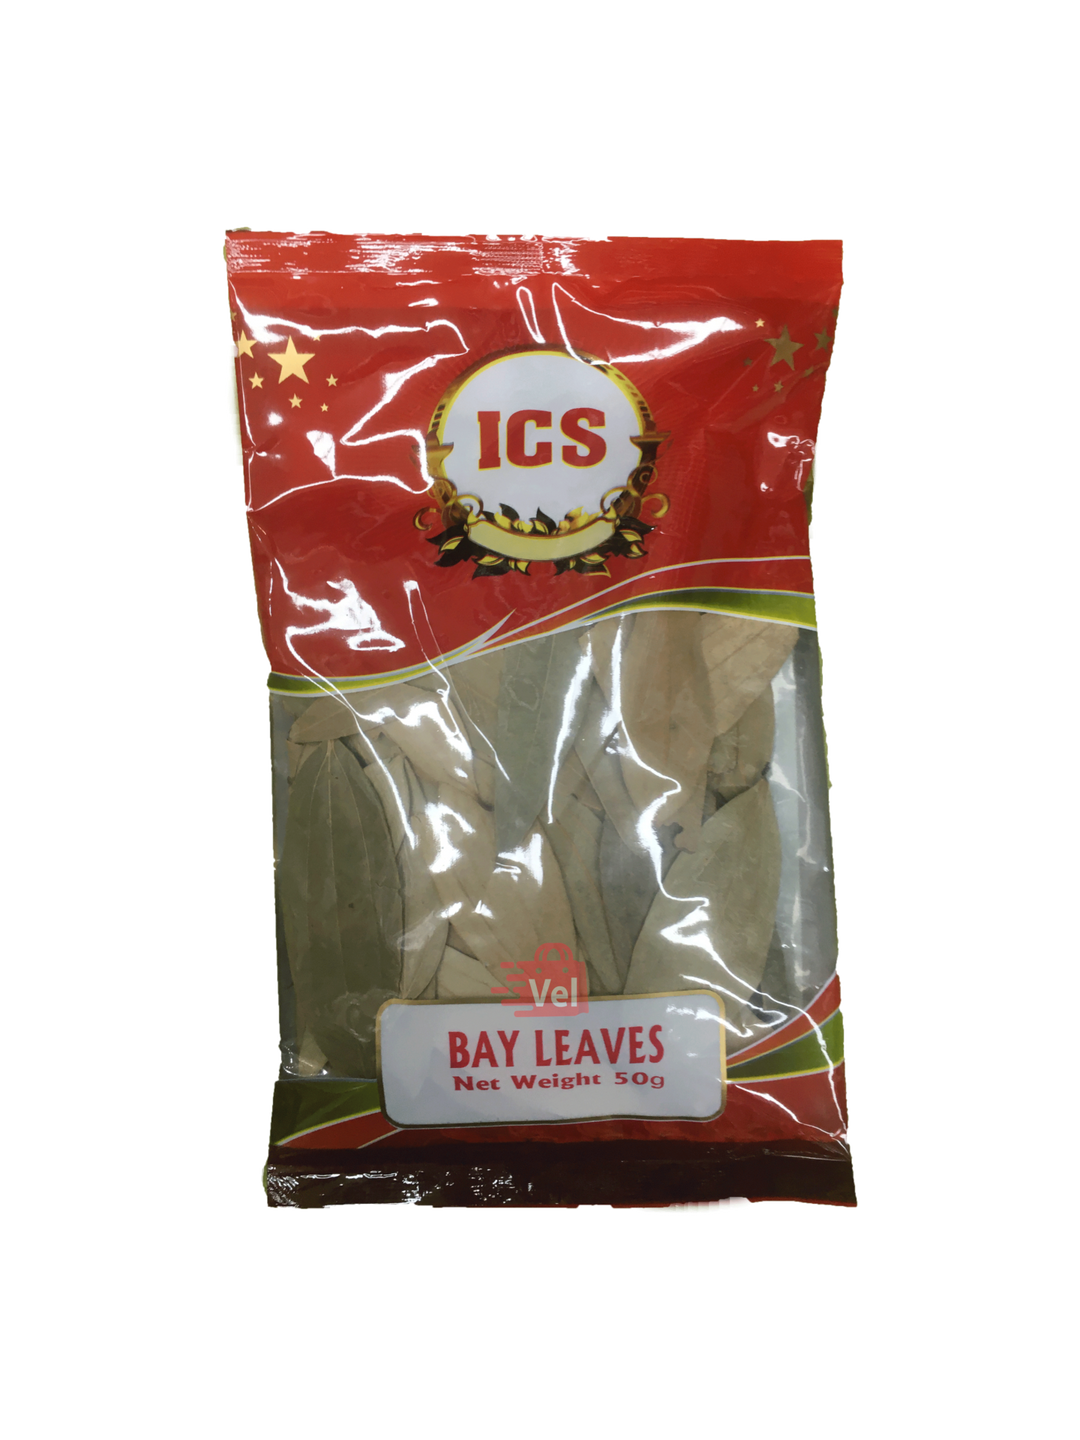 Ics Bay Leaves 50G